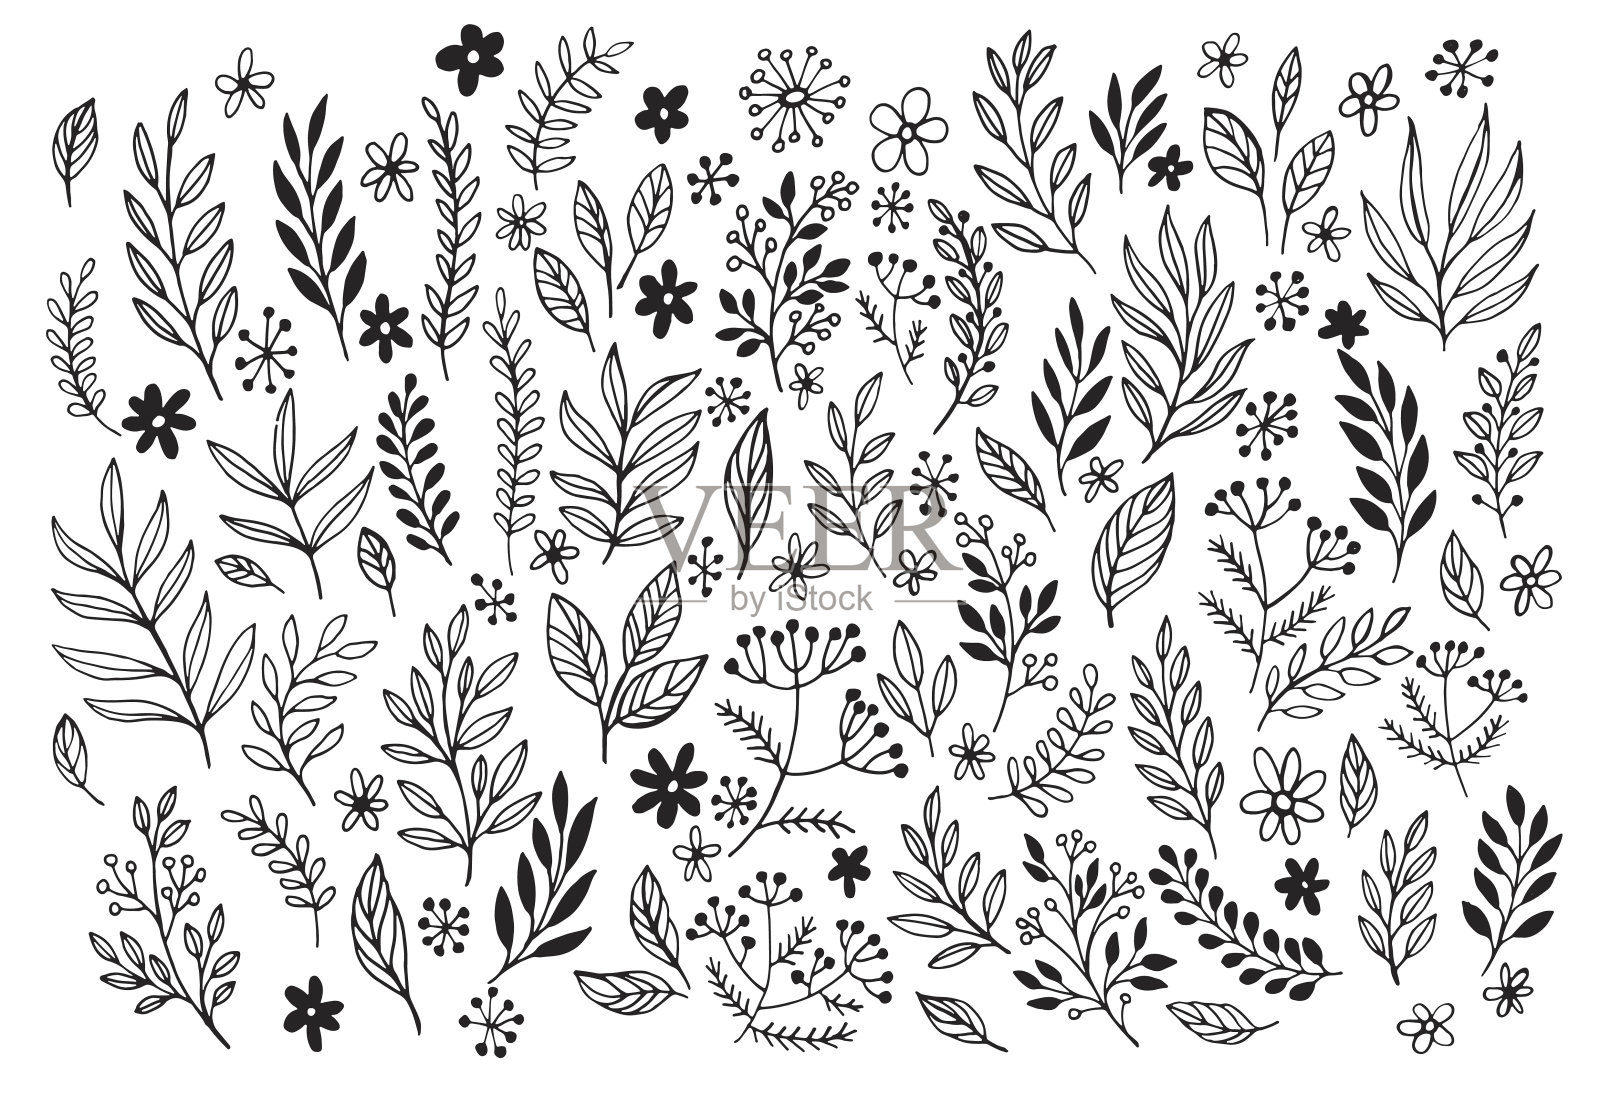 一套线条涂鸦手绘设计花卉元素插画图片素材